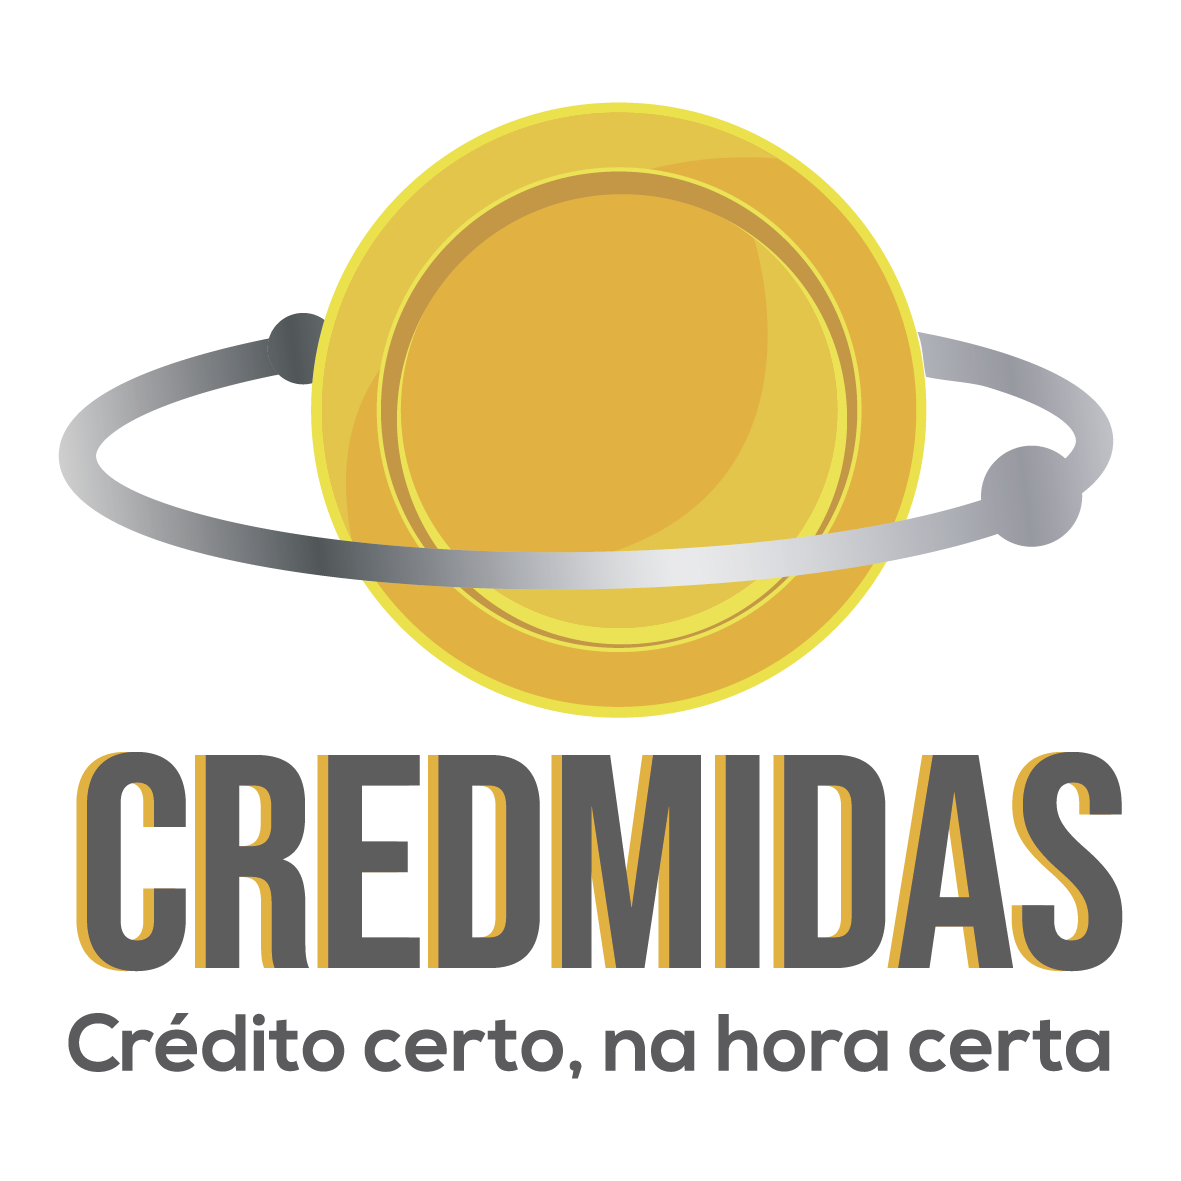 CredMidas